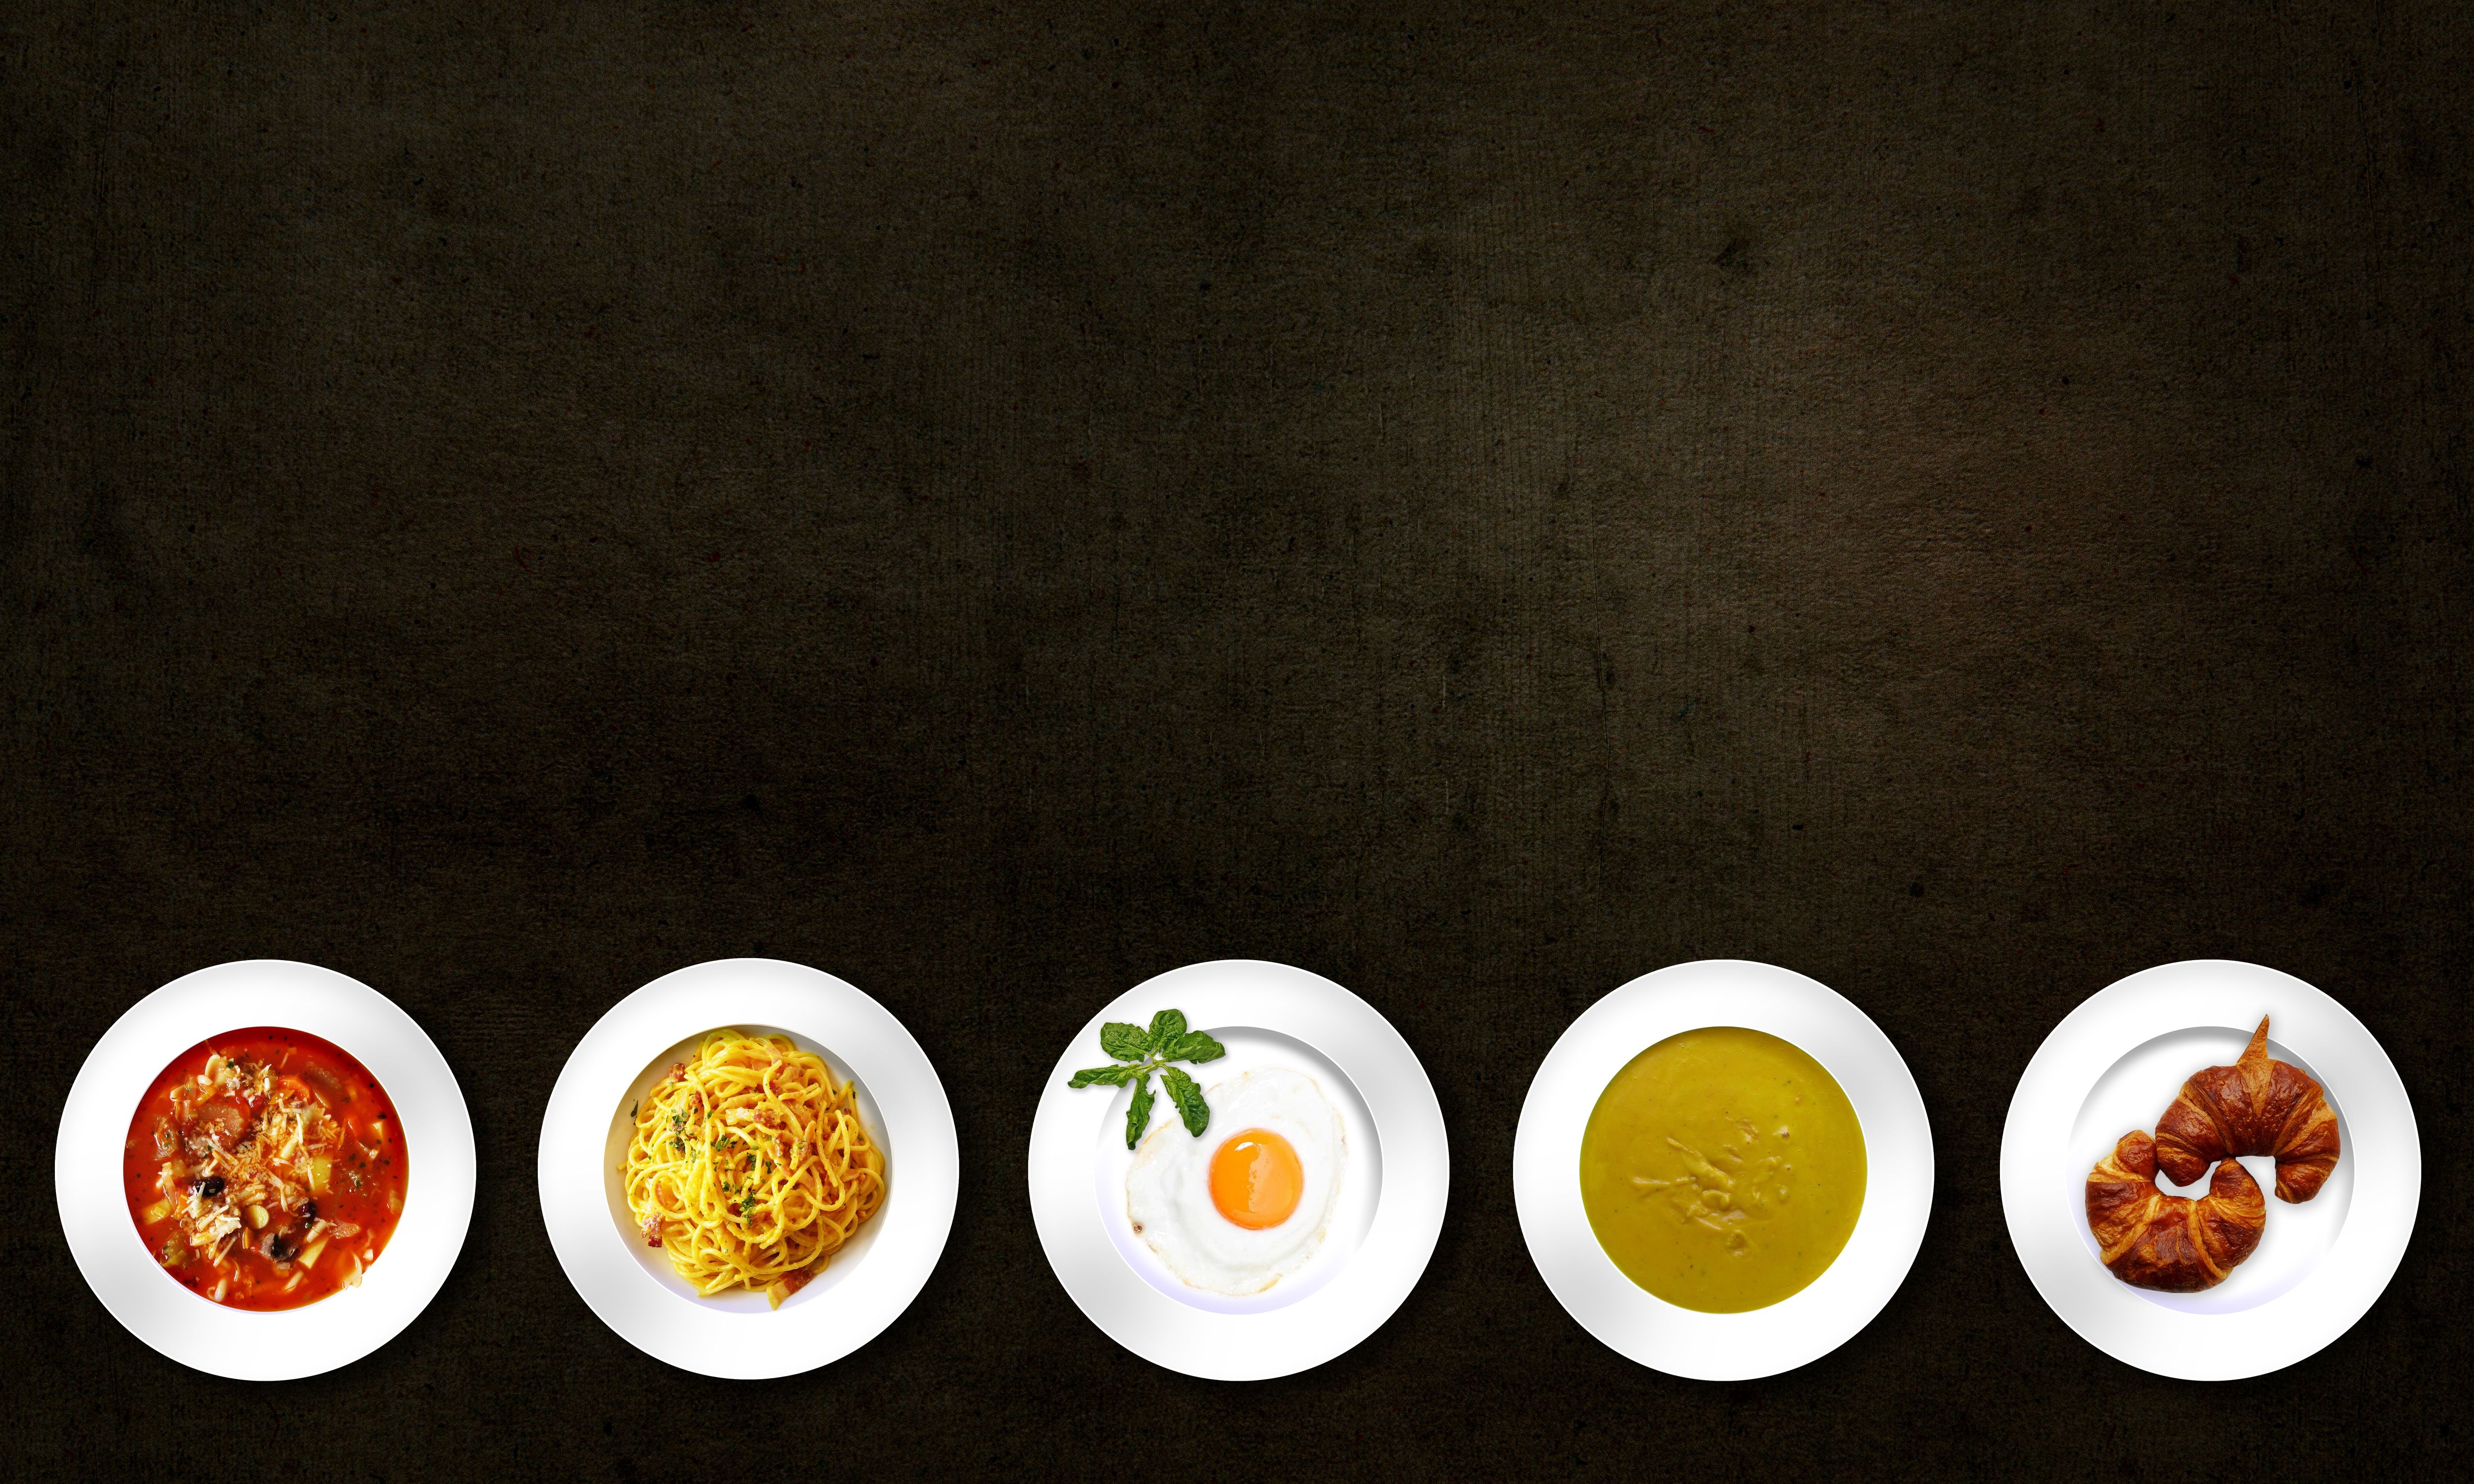 تصویر زمینه HD لپتاپ رستوران با طرح پنج بشقاب خوشمزه